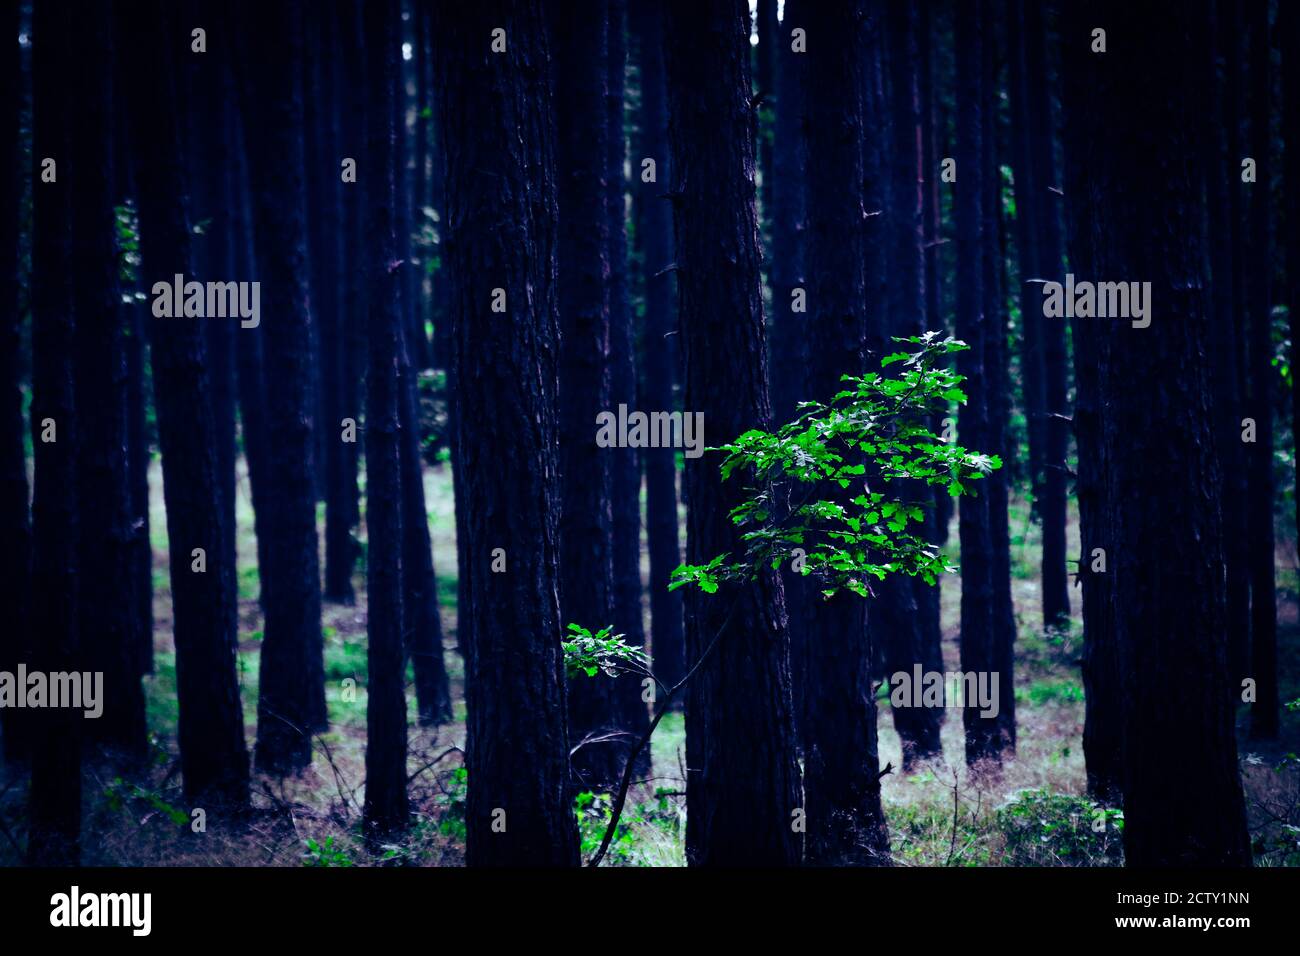 Einsame junge Eiche wächst verloren in Kiefernwald, grüner Baum mit vielen Baumstämmen im Hintergrund Stockfoto